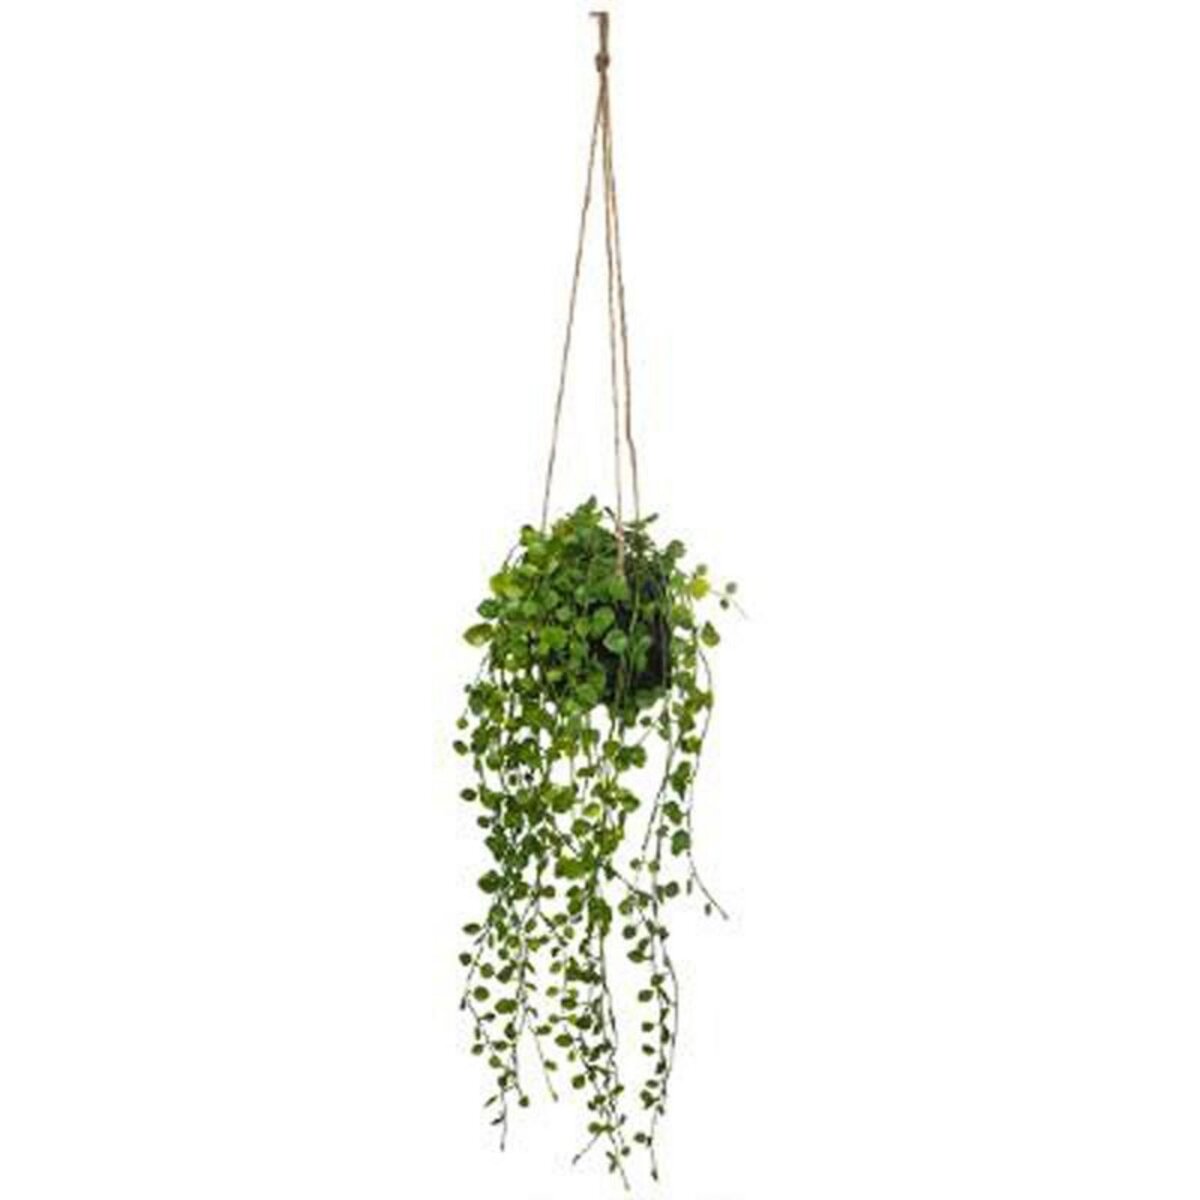  Plante Artificielle à Suspendre  Living  62cm Vert